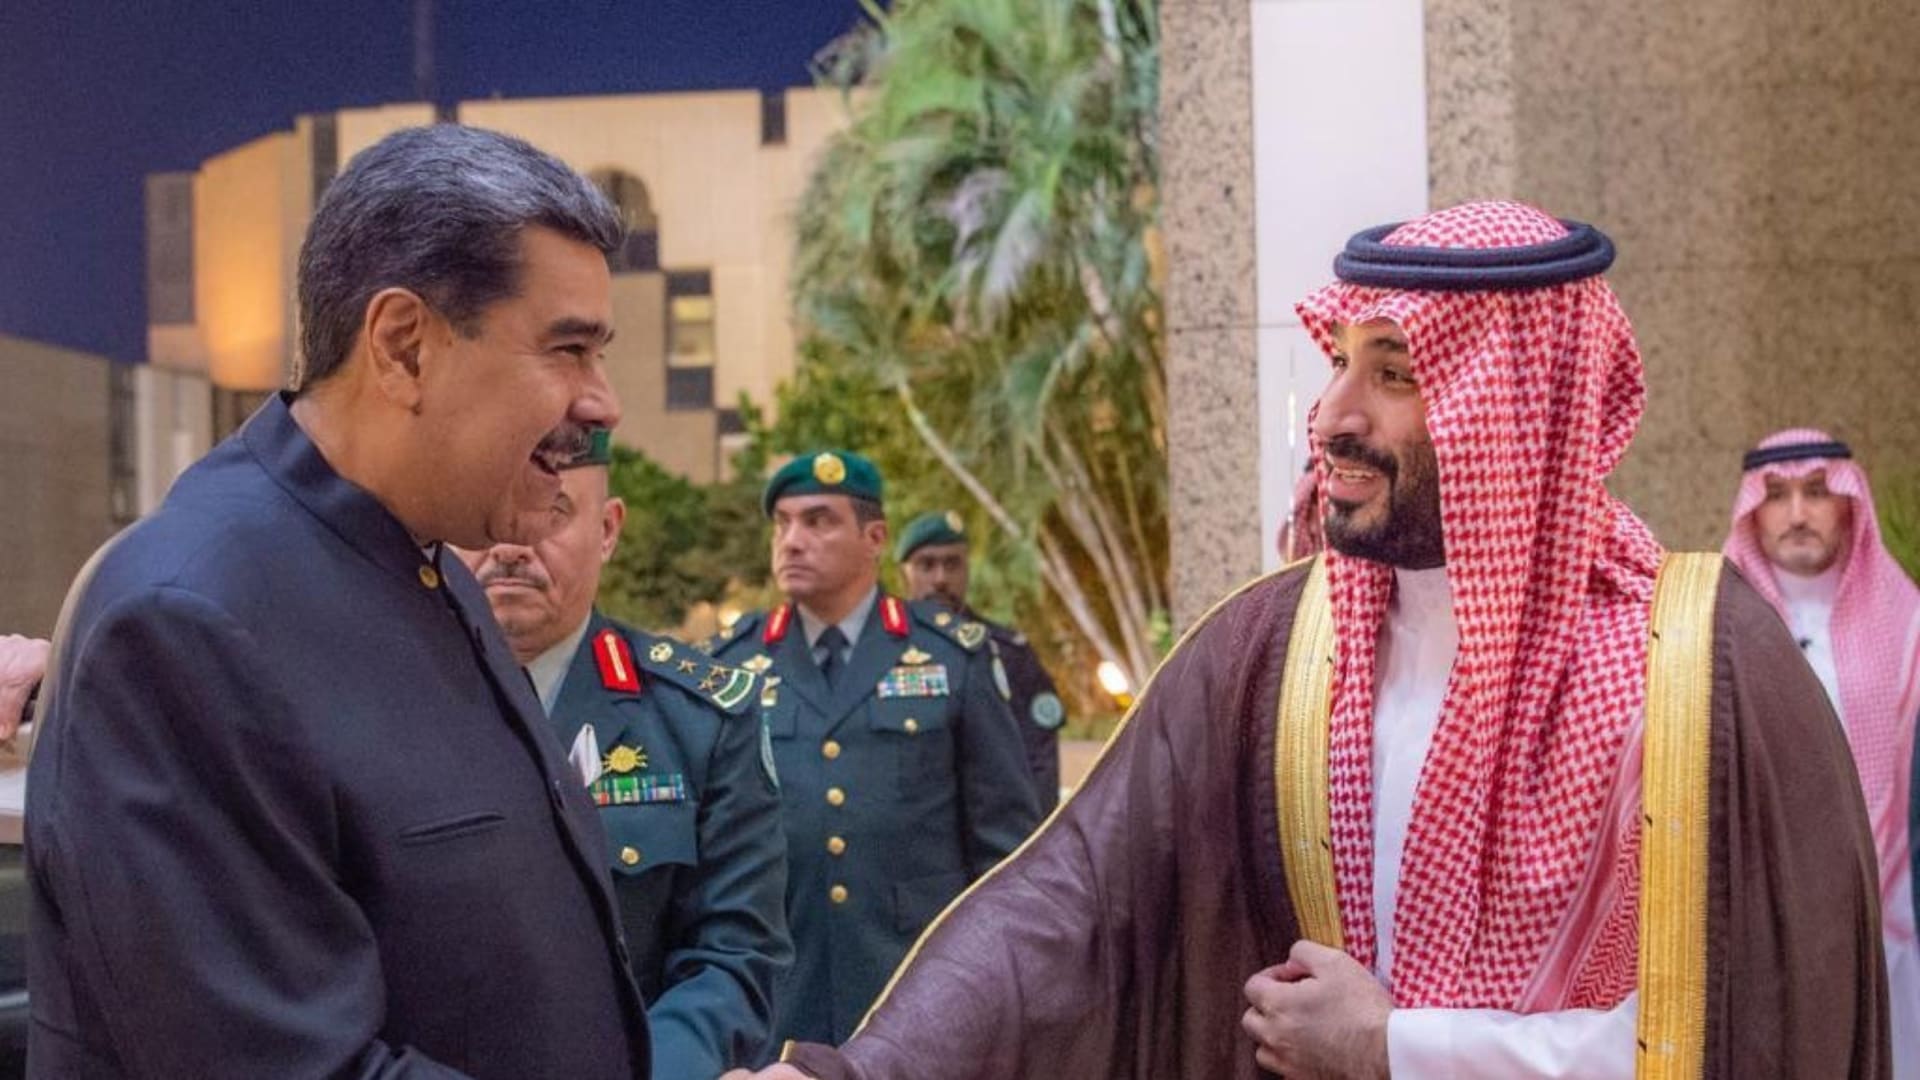 محمد بن سلمان يلتقي رئيس فنزويلا.. وخارجية السعودية توضح تفاصيل اللقاء